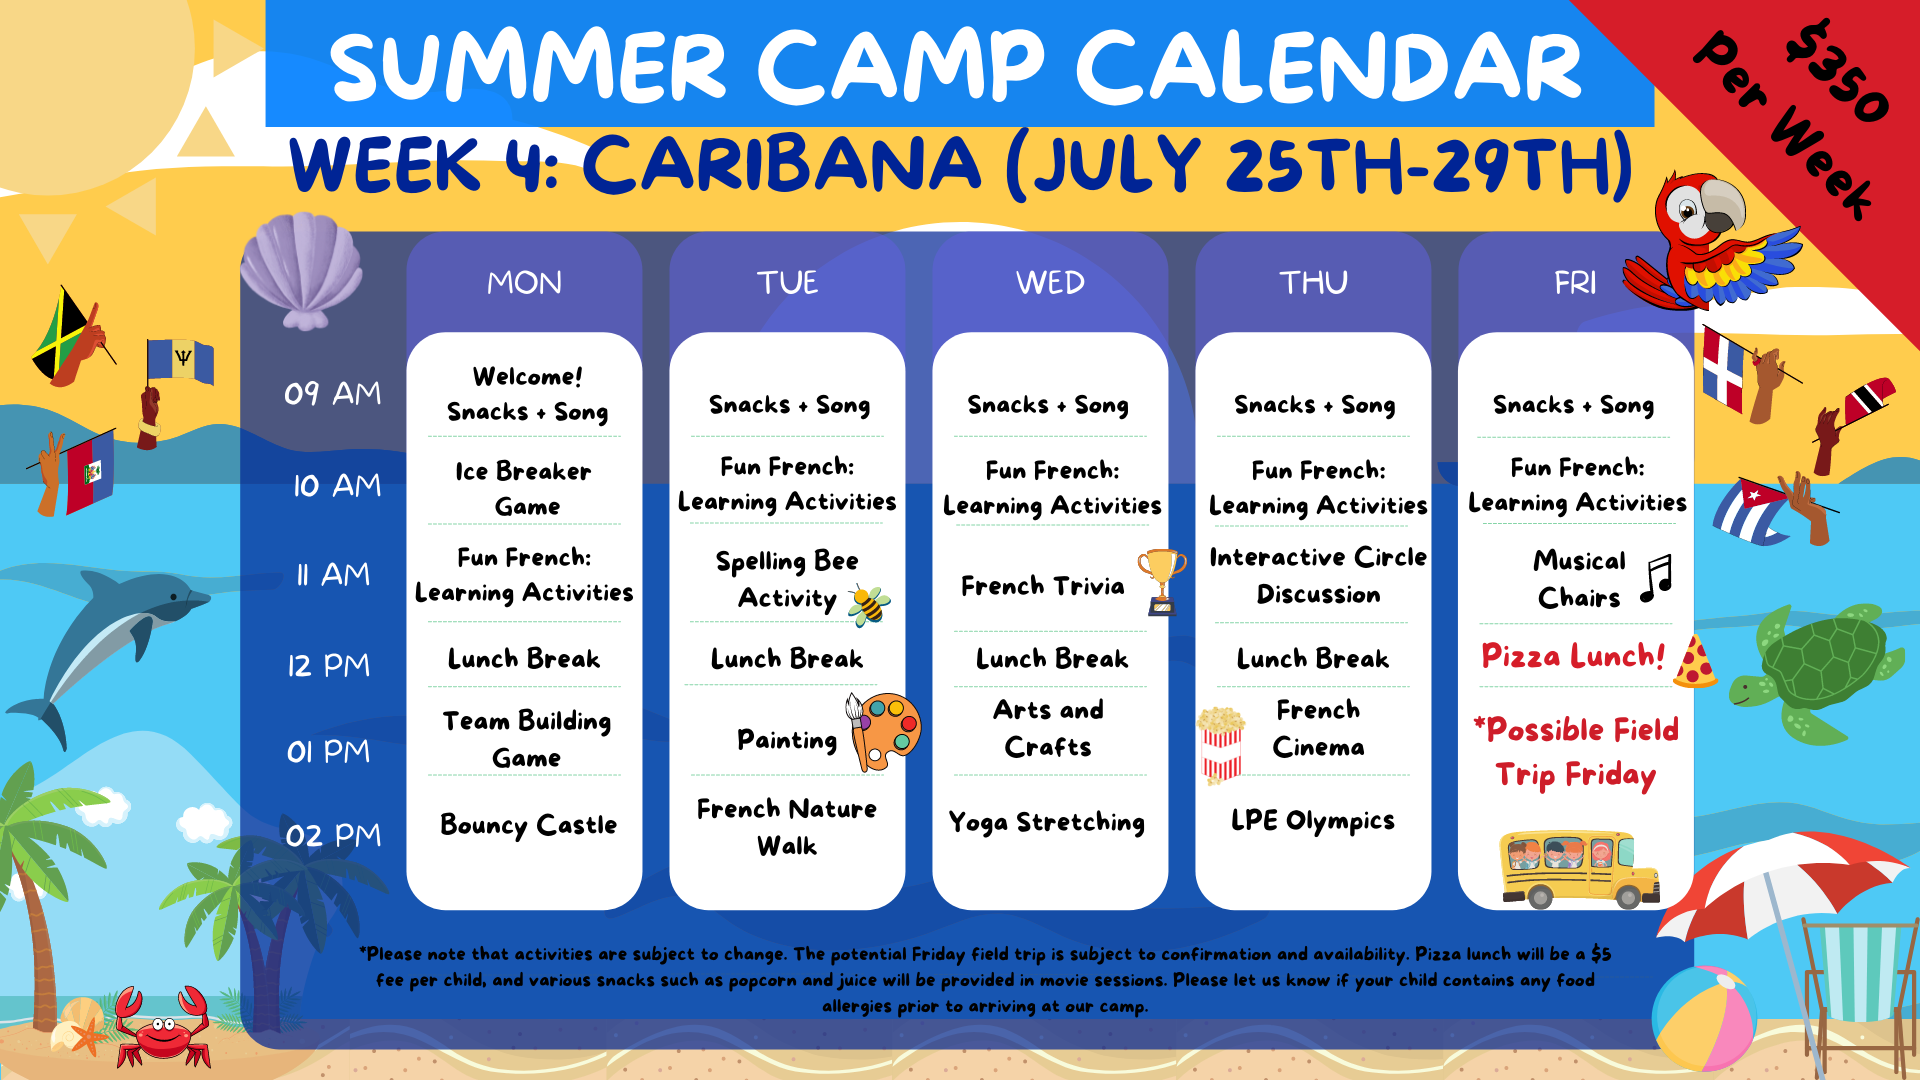 Week 4 of summer camp